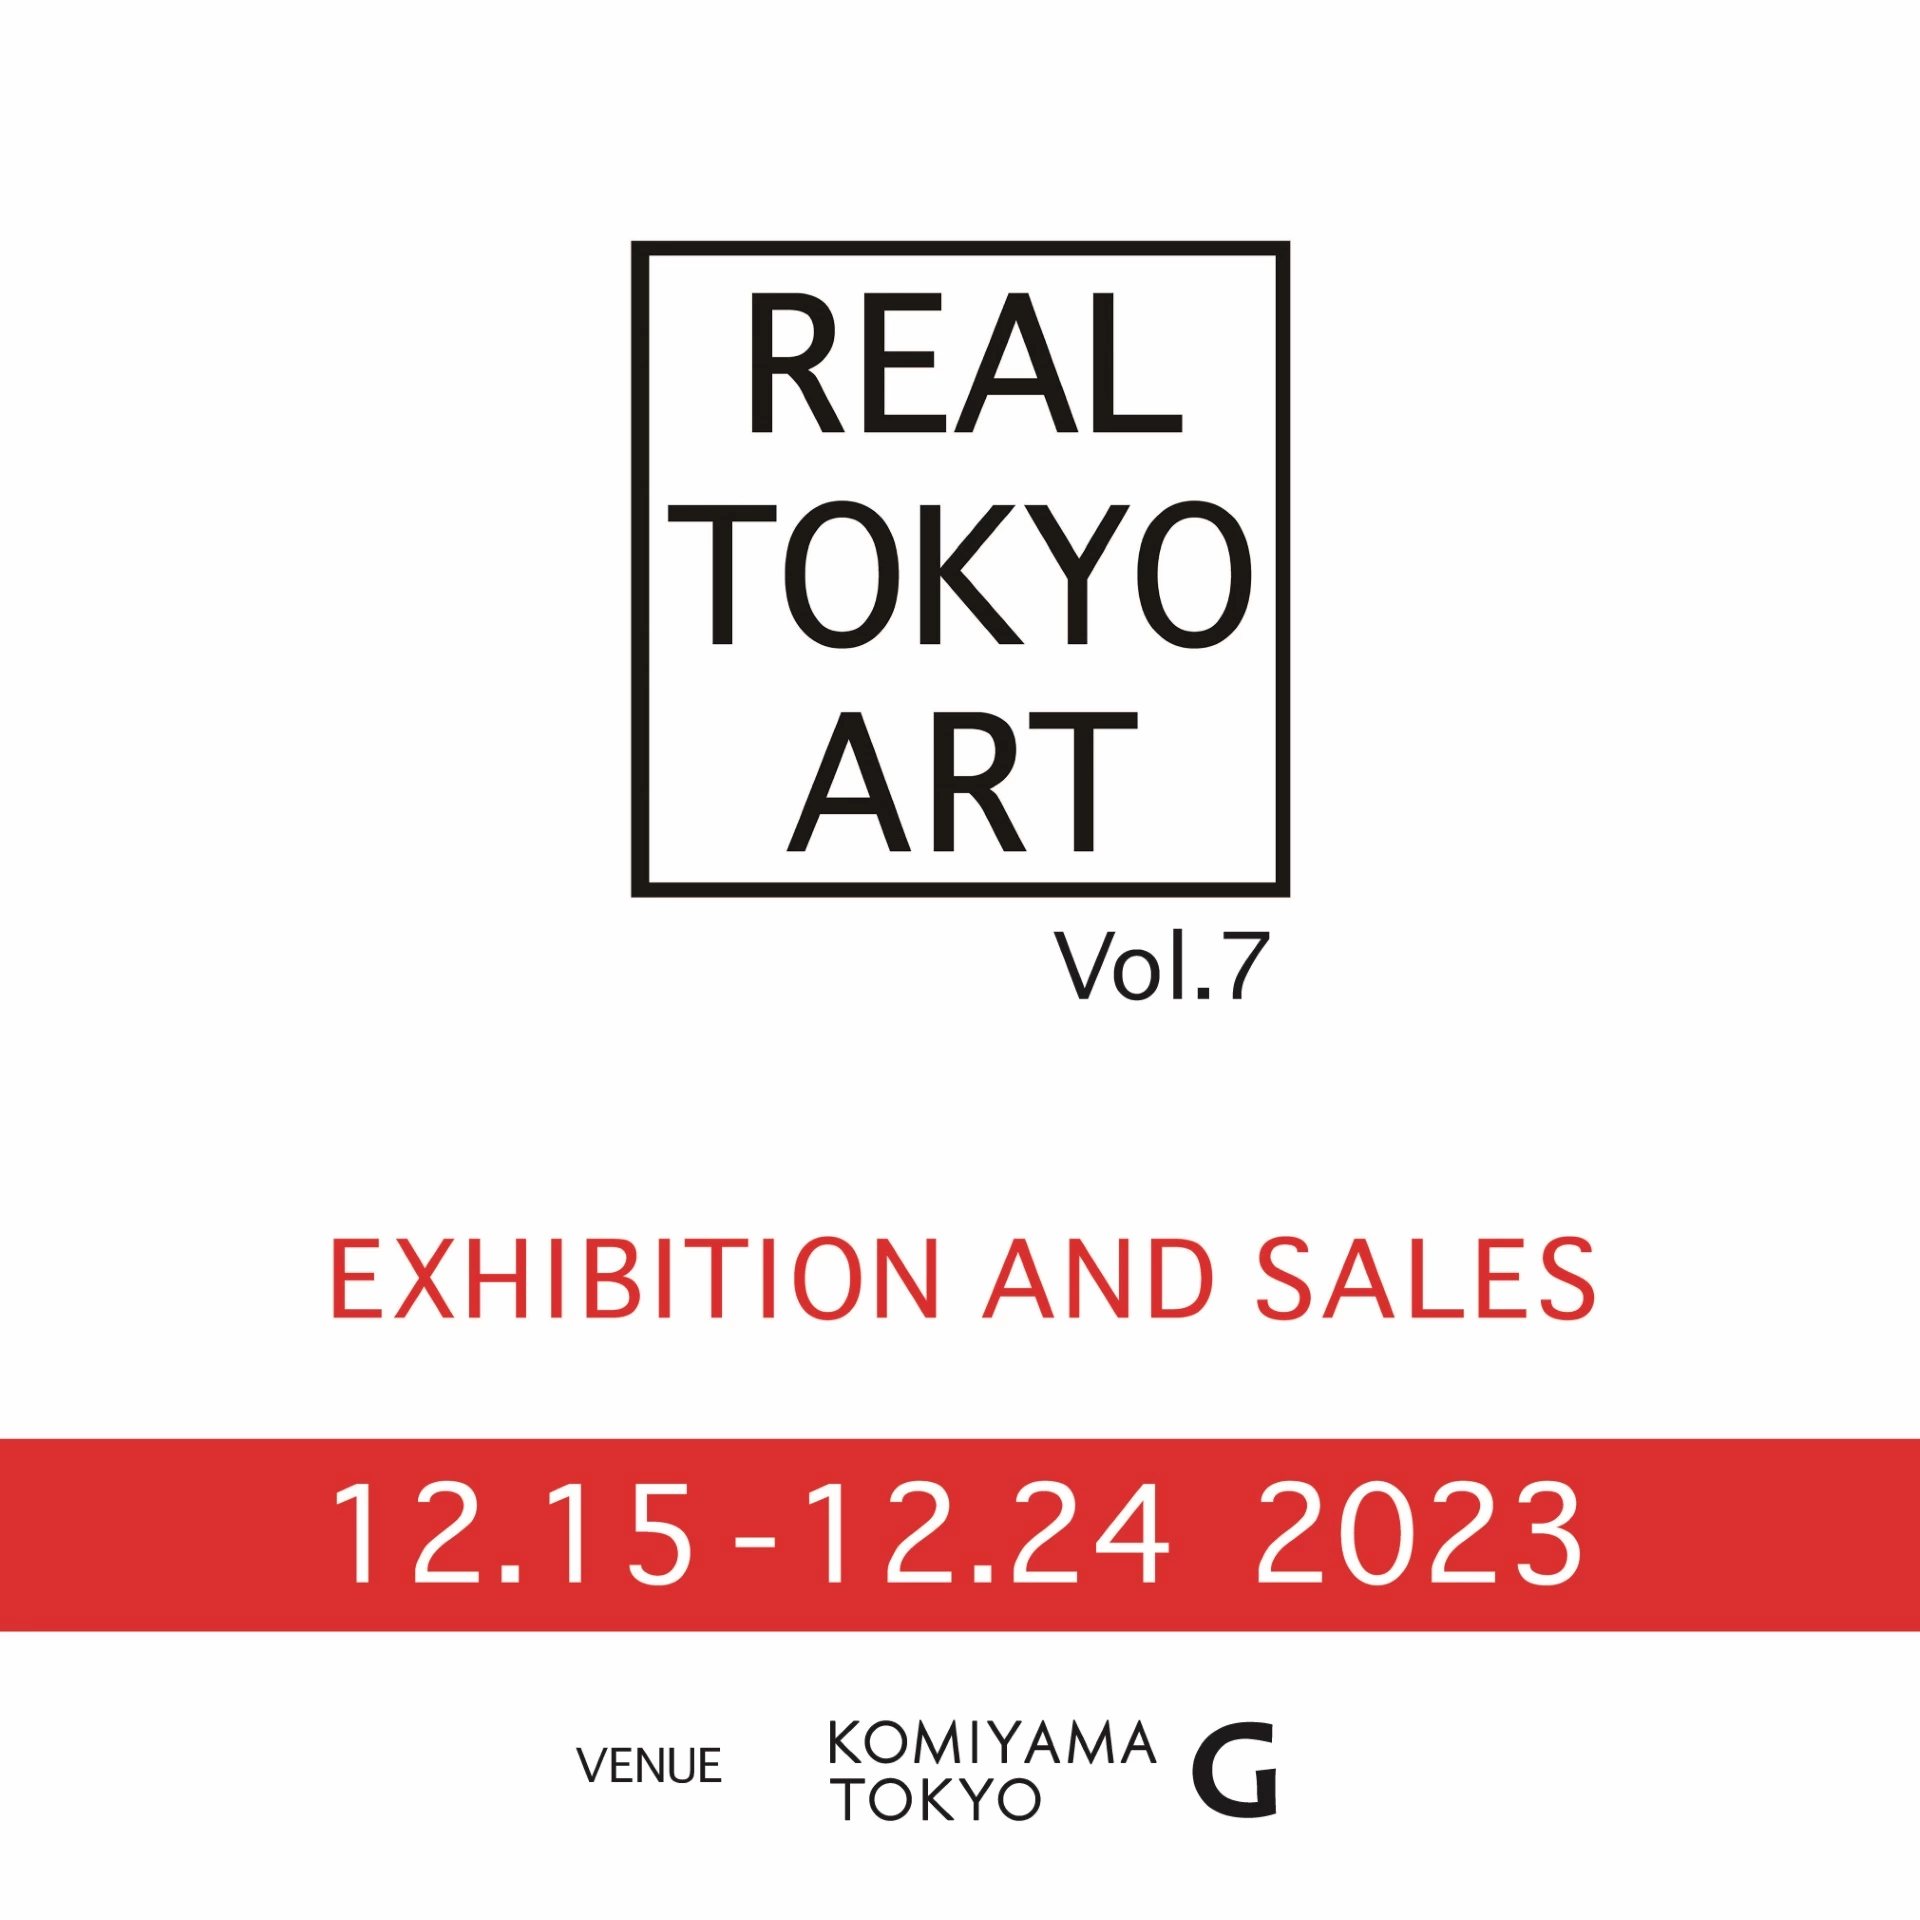 REAL TOKYO ART Vol.7